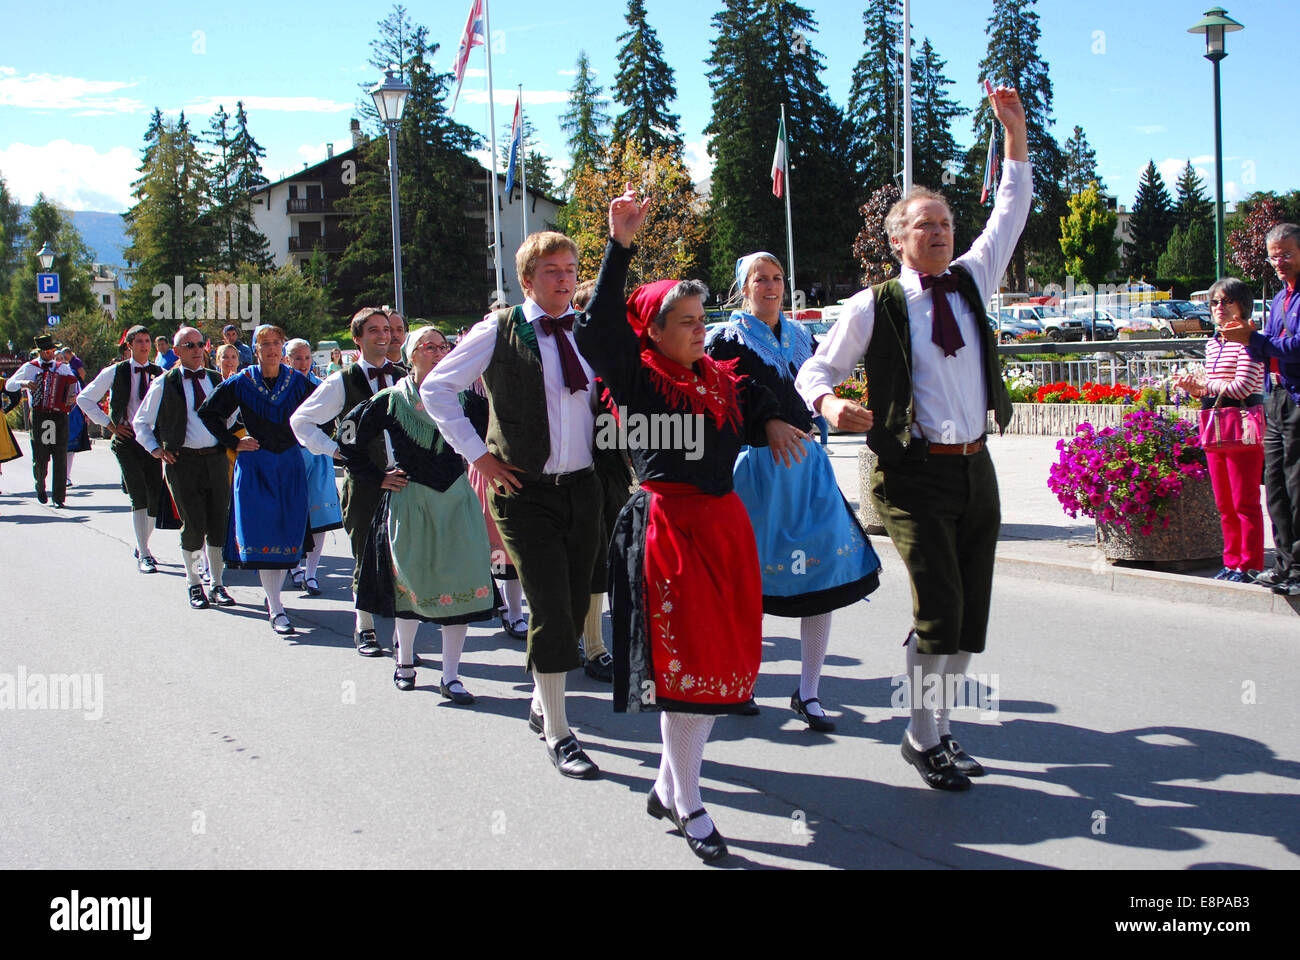 Plongée de cérémonie des vaches de la montagne à crans. Montana-Switzerland Responsable du groupe de danse folklorique la parade. Les danseurs portent la garp typique du canton du Valais. Banque D'Images